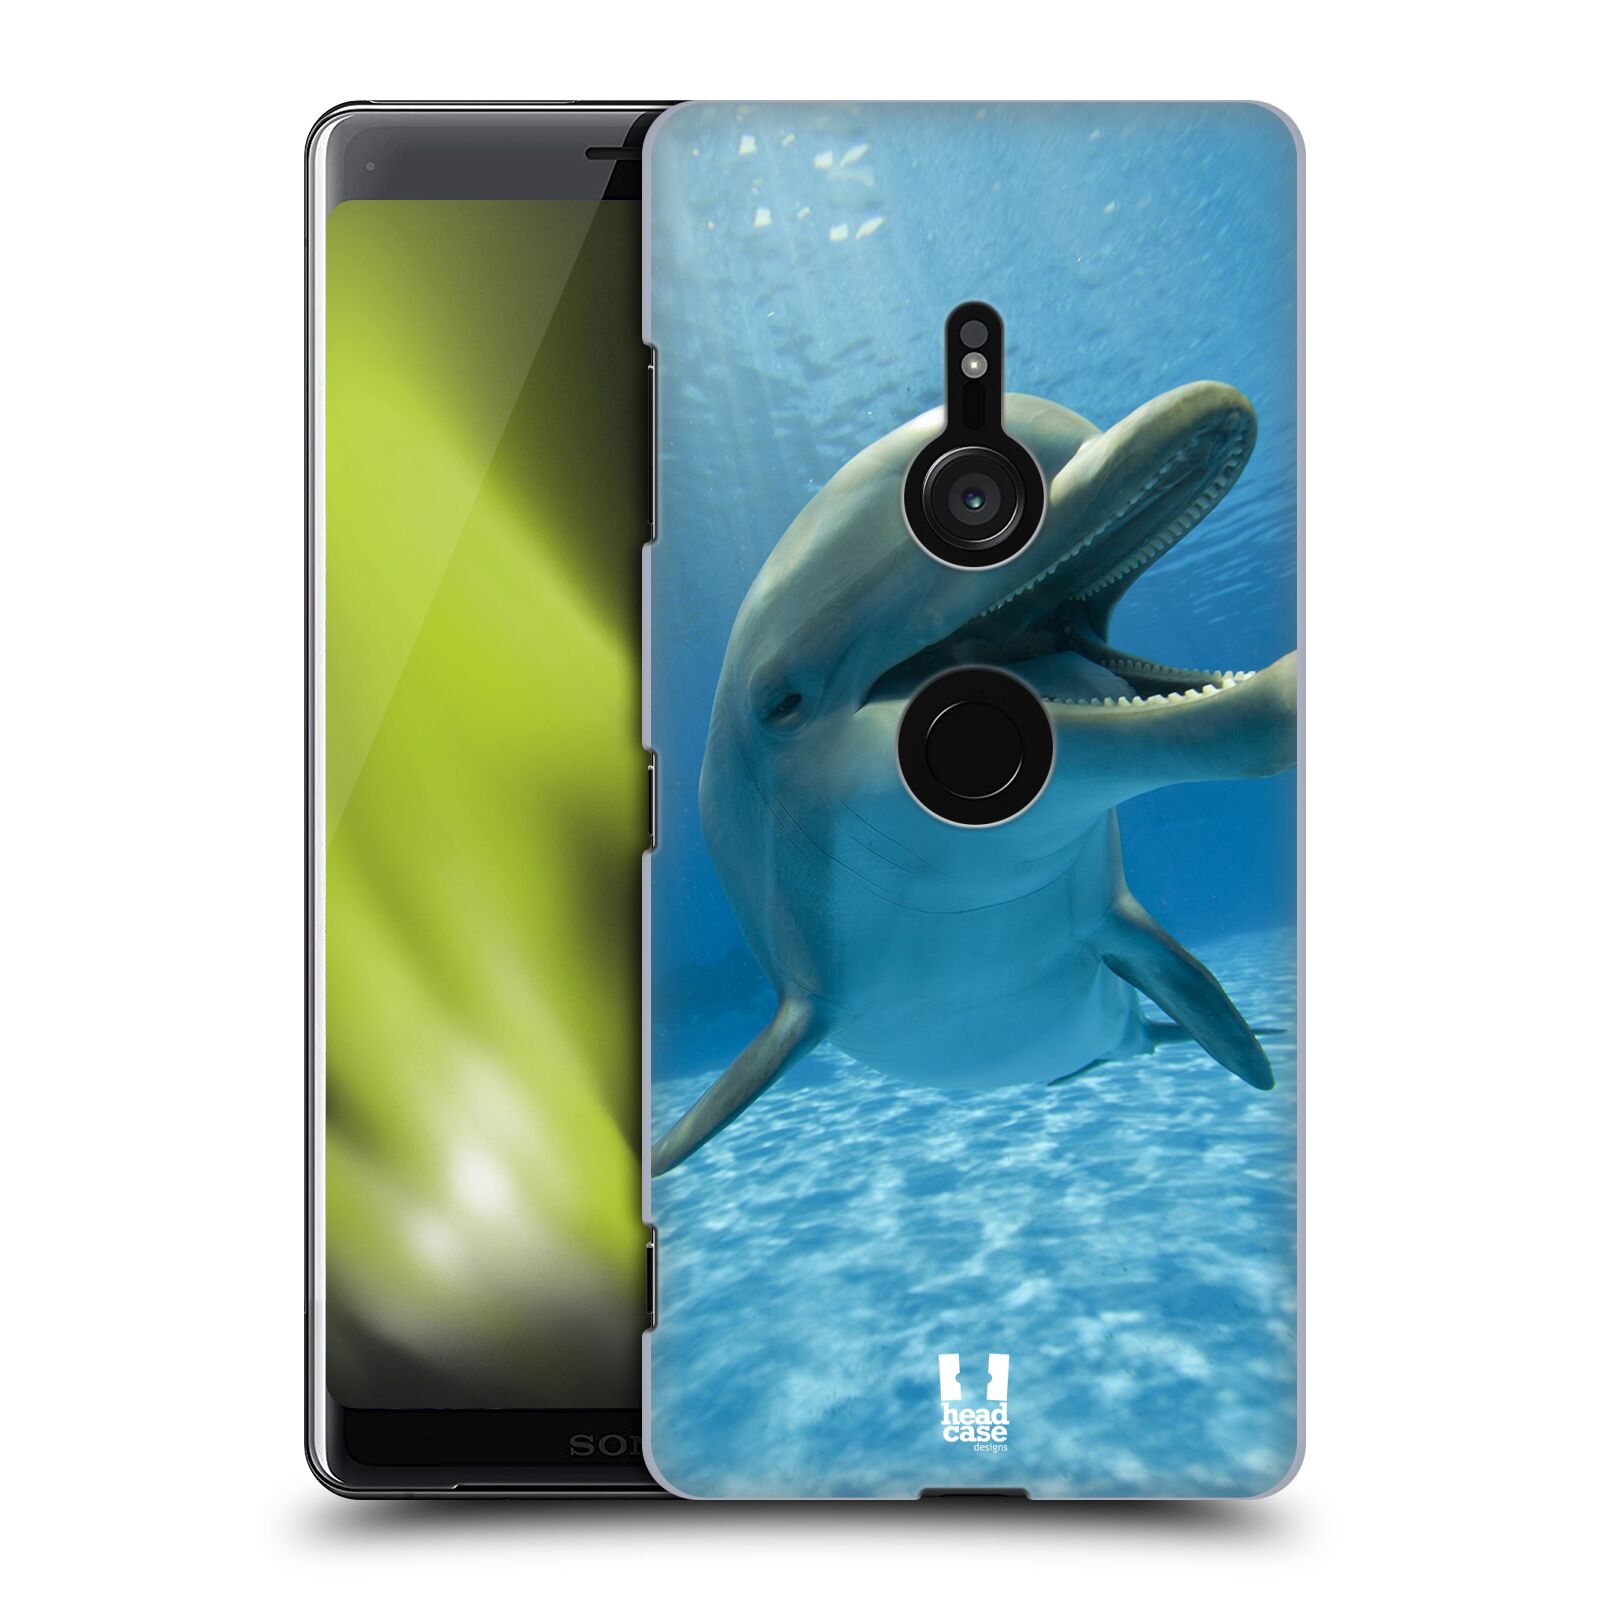 Zadní obal pro mobil Sony Xperia XZ3 - HEAD CASE - Svět zvířat delfín v moři